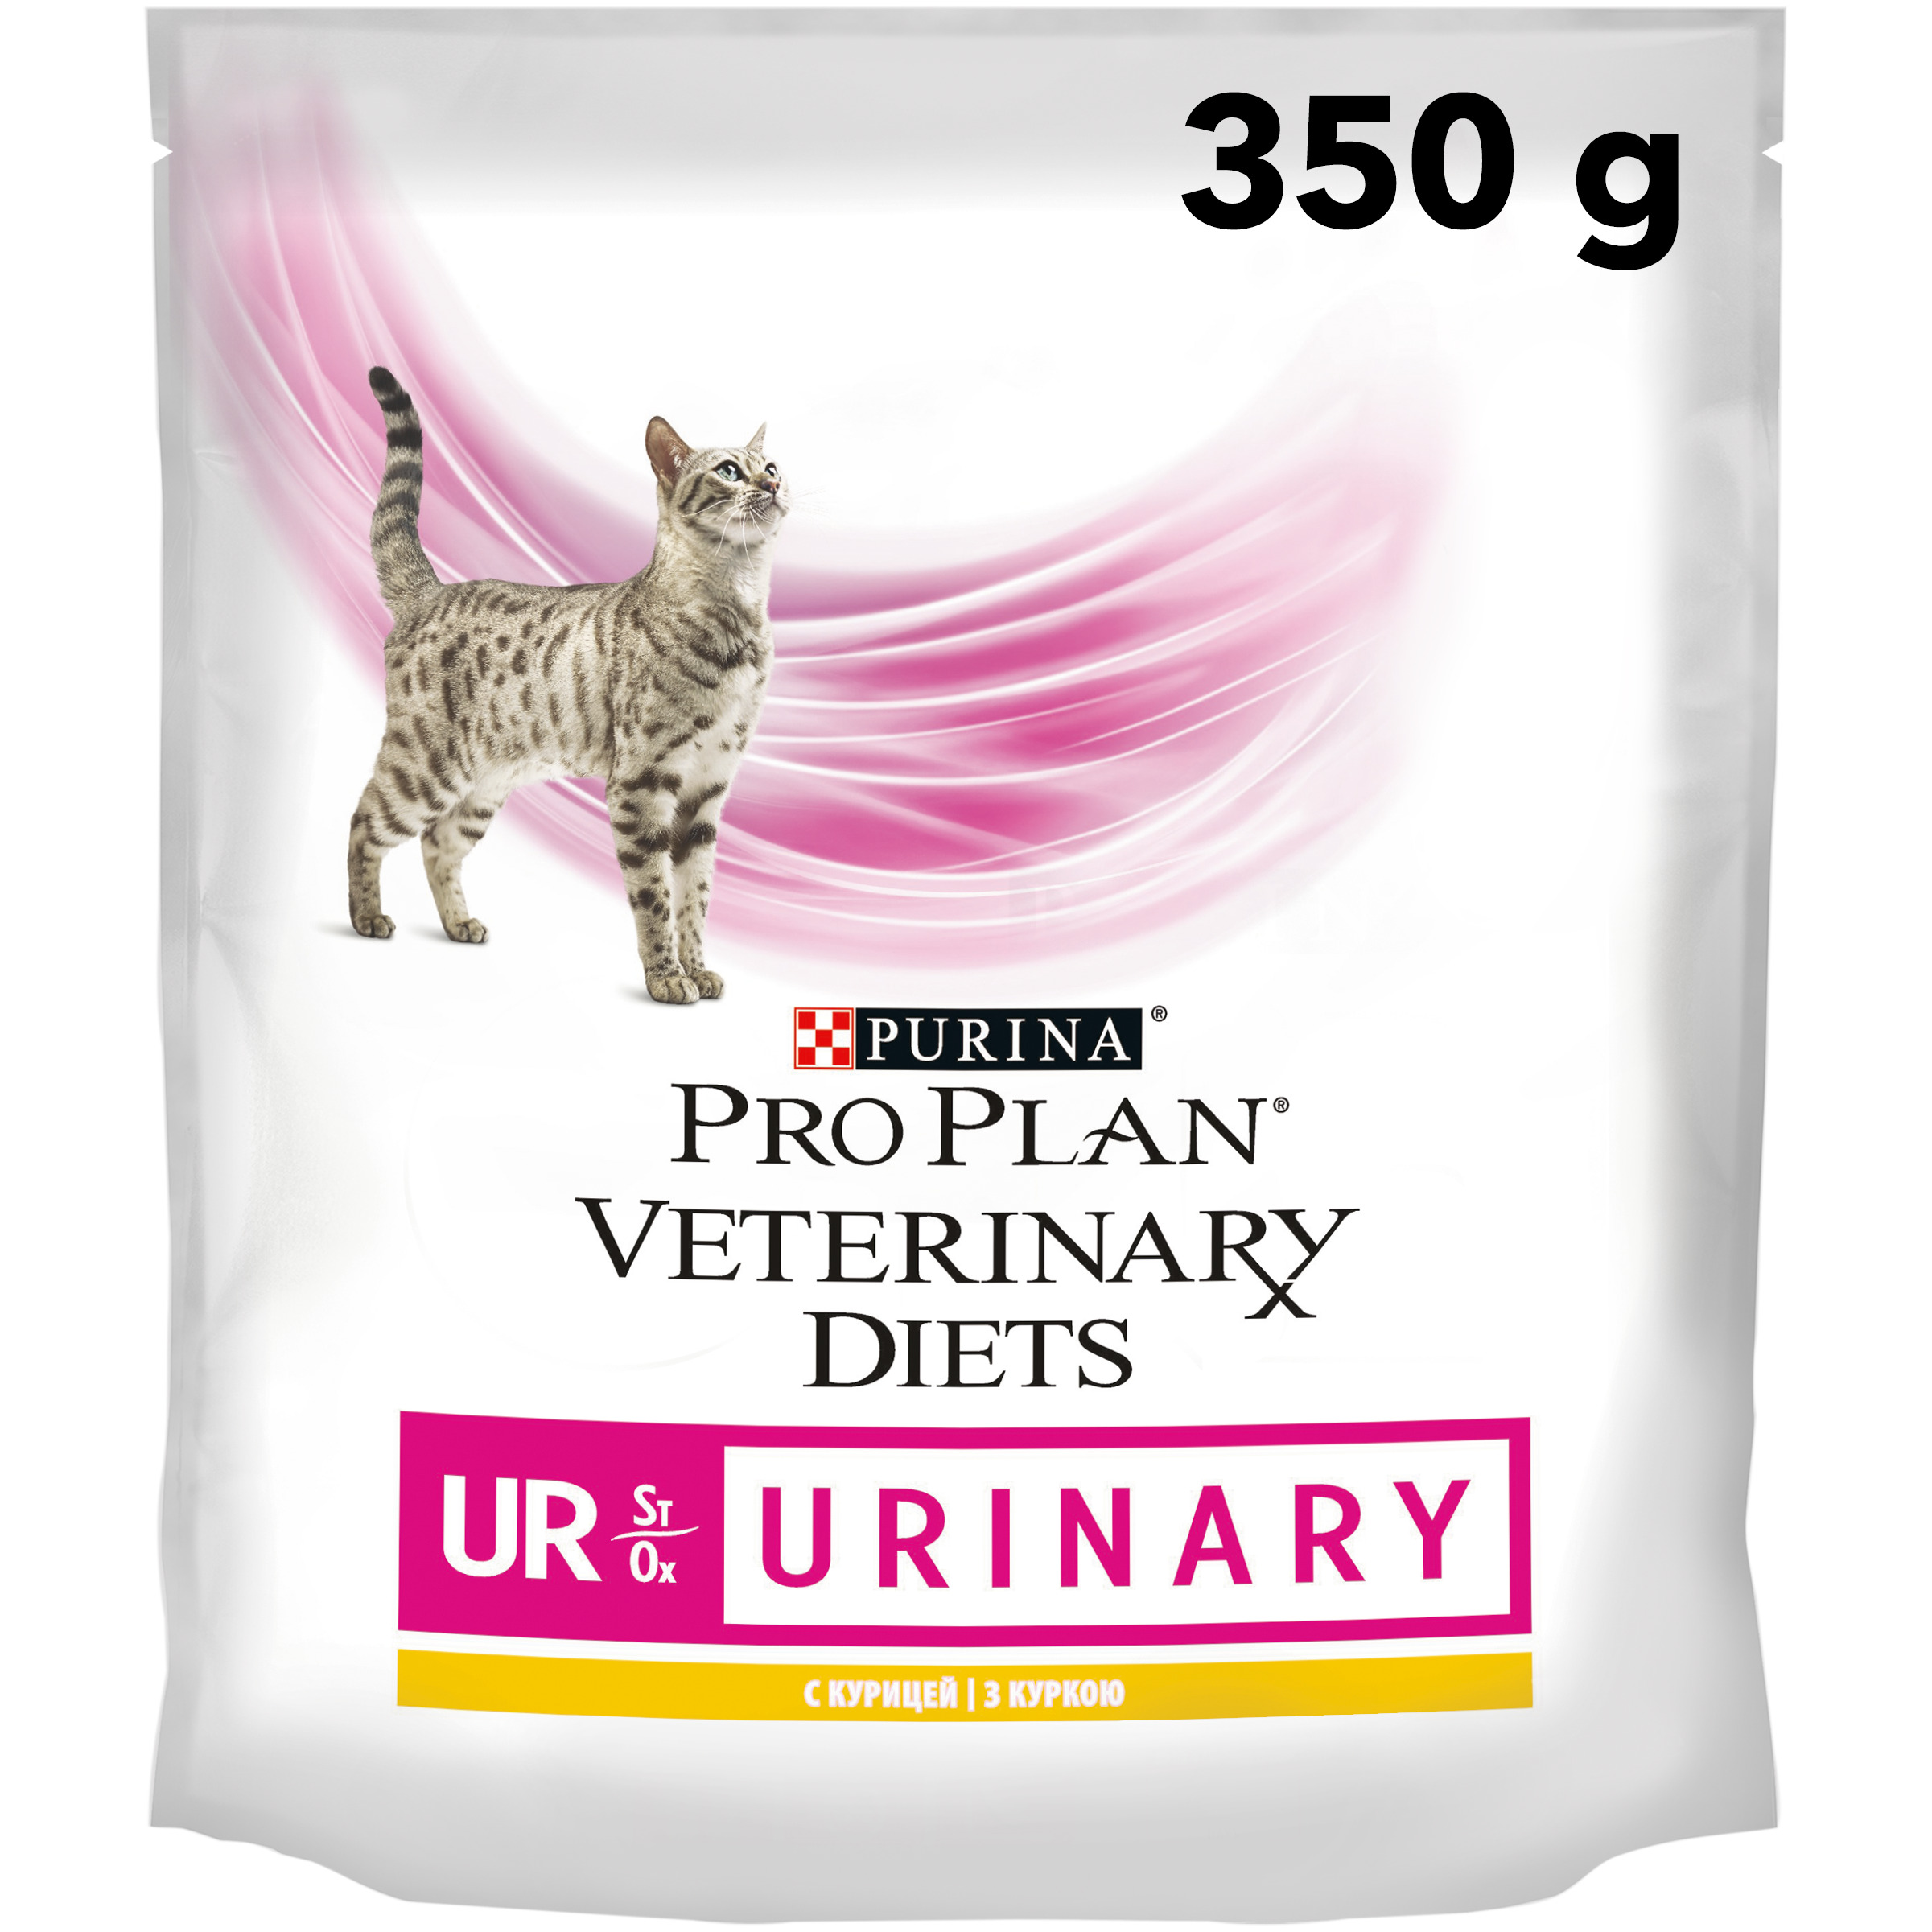 Pro plan veterinary urinary для кошек